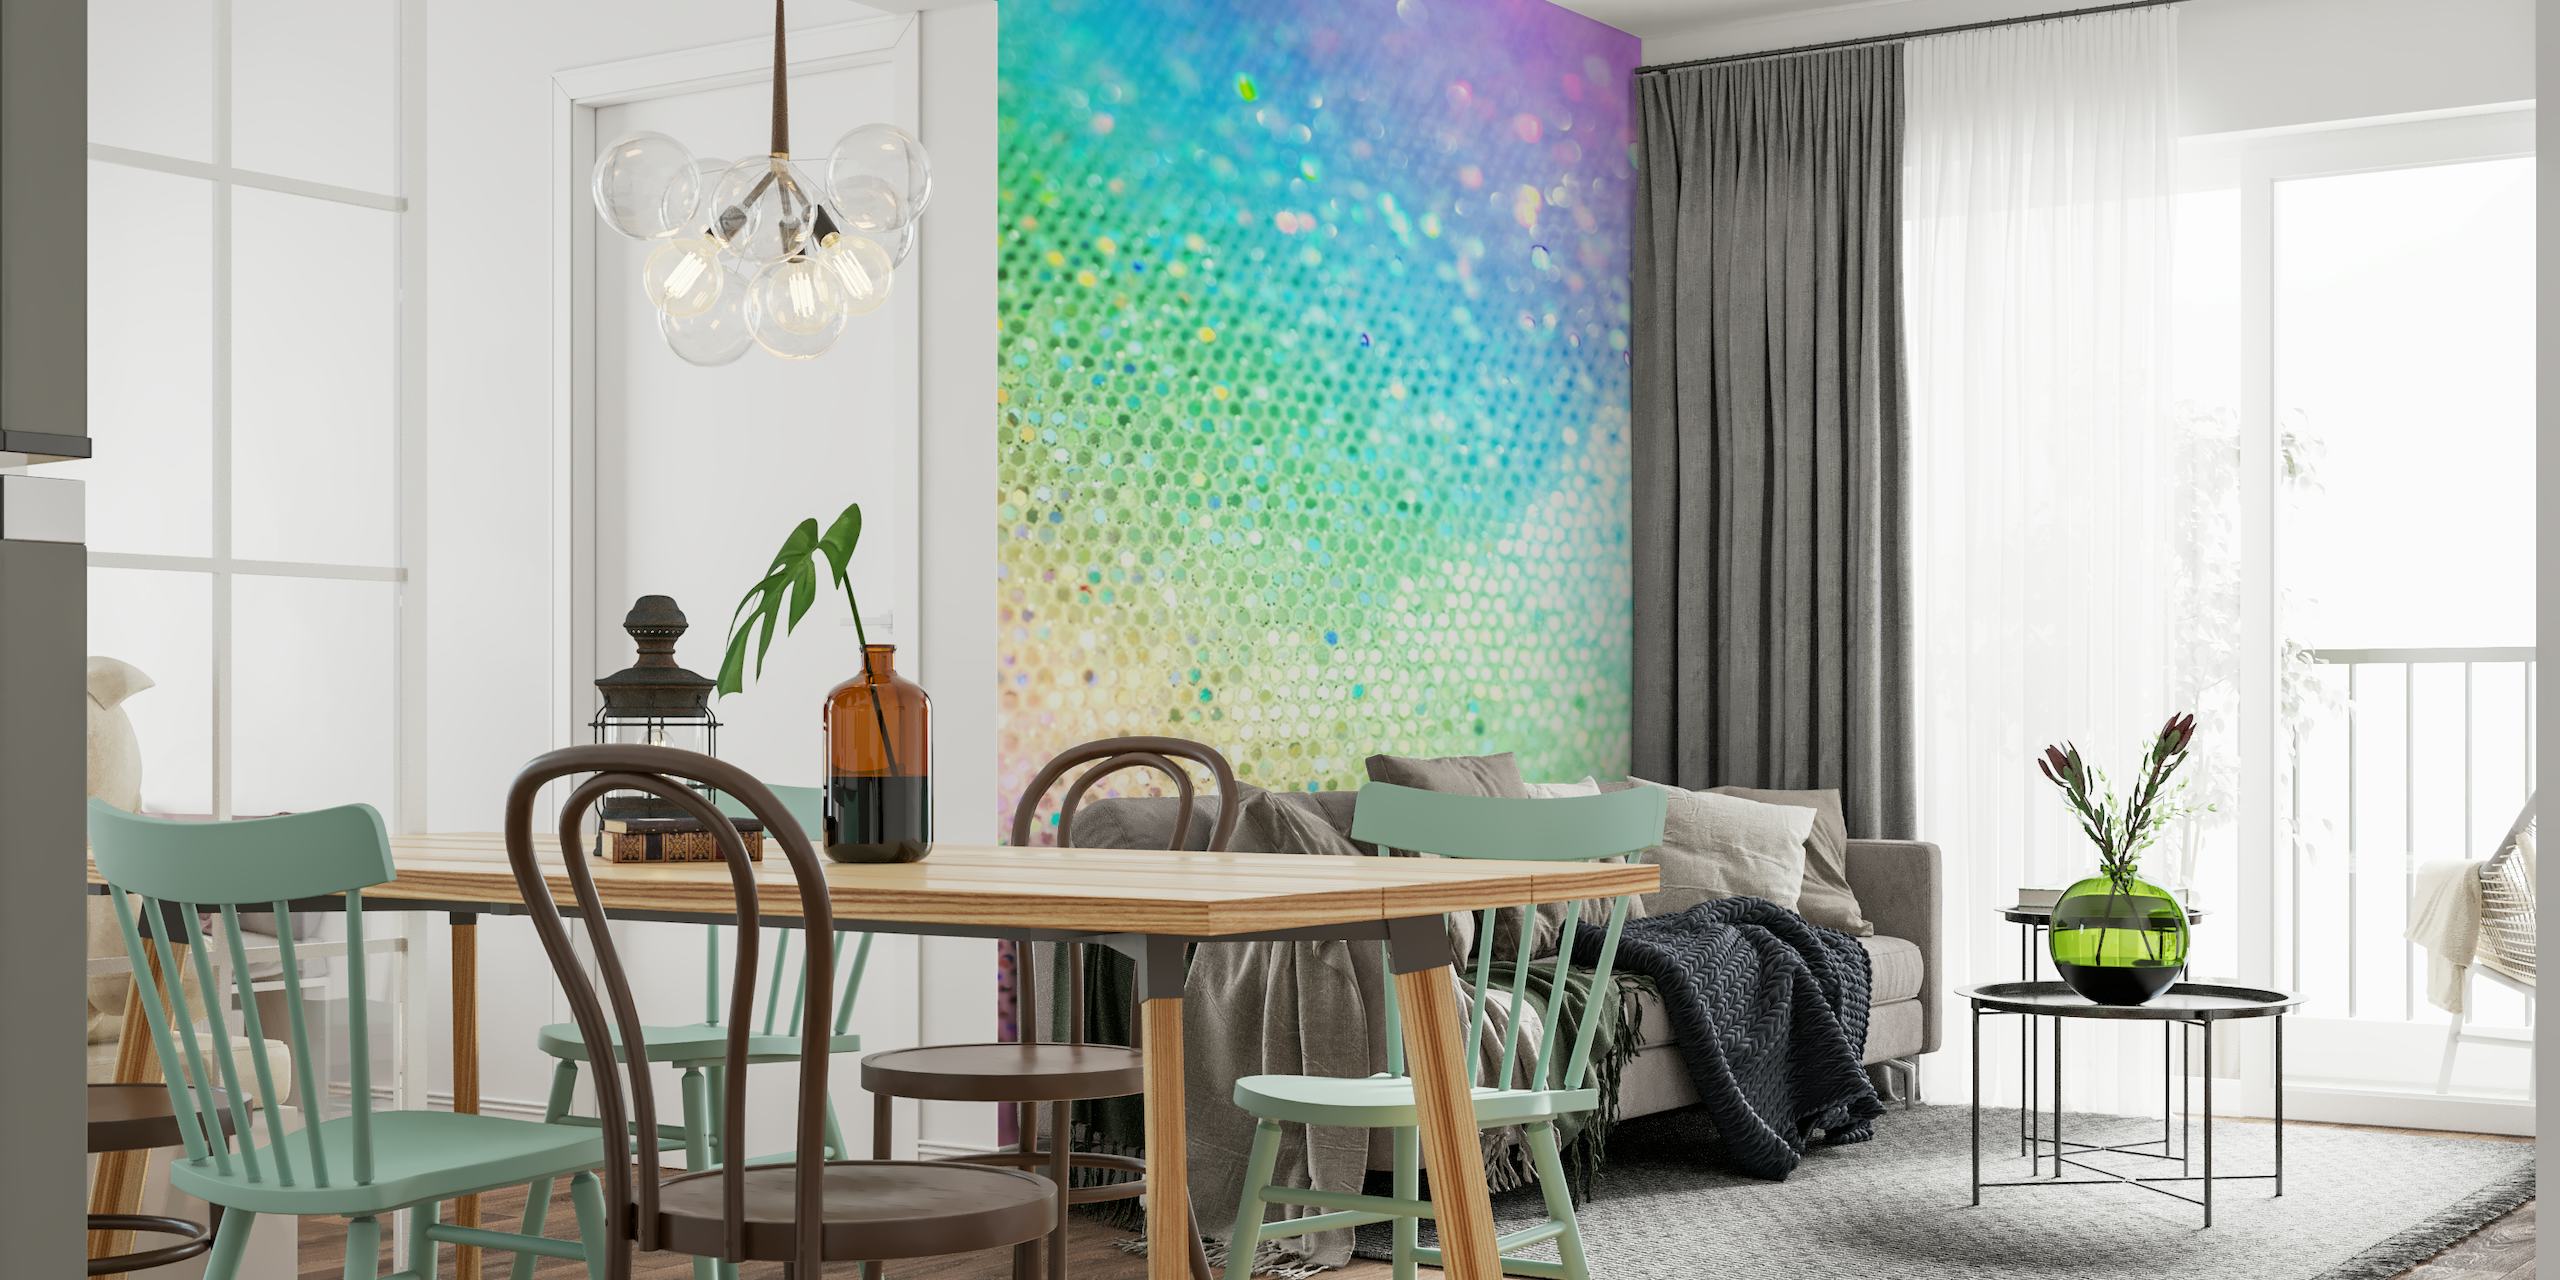 Ein farbenfrohes Wandbild mit einem Farbverlauf aus glitzernden Glitzerpunkten in Regenbogenfarben